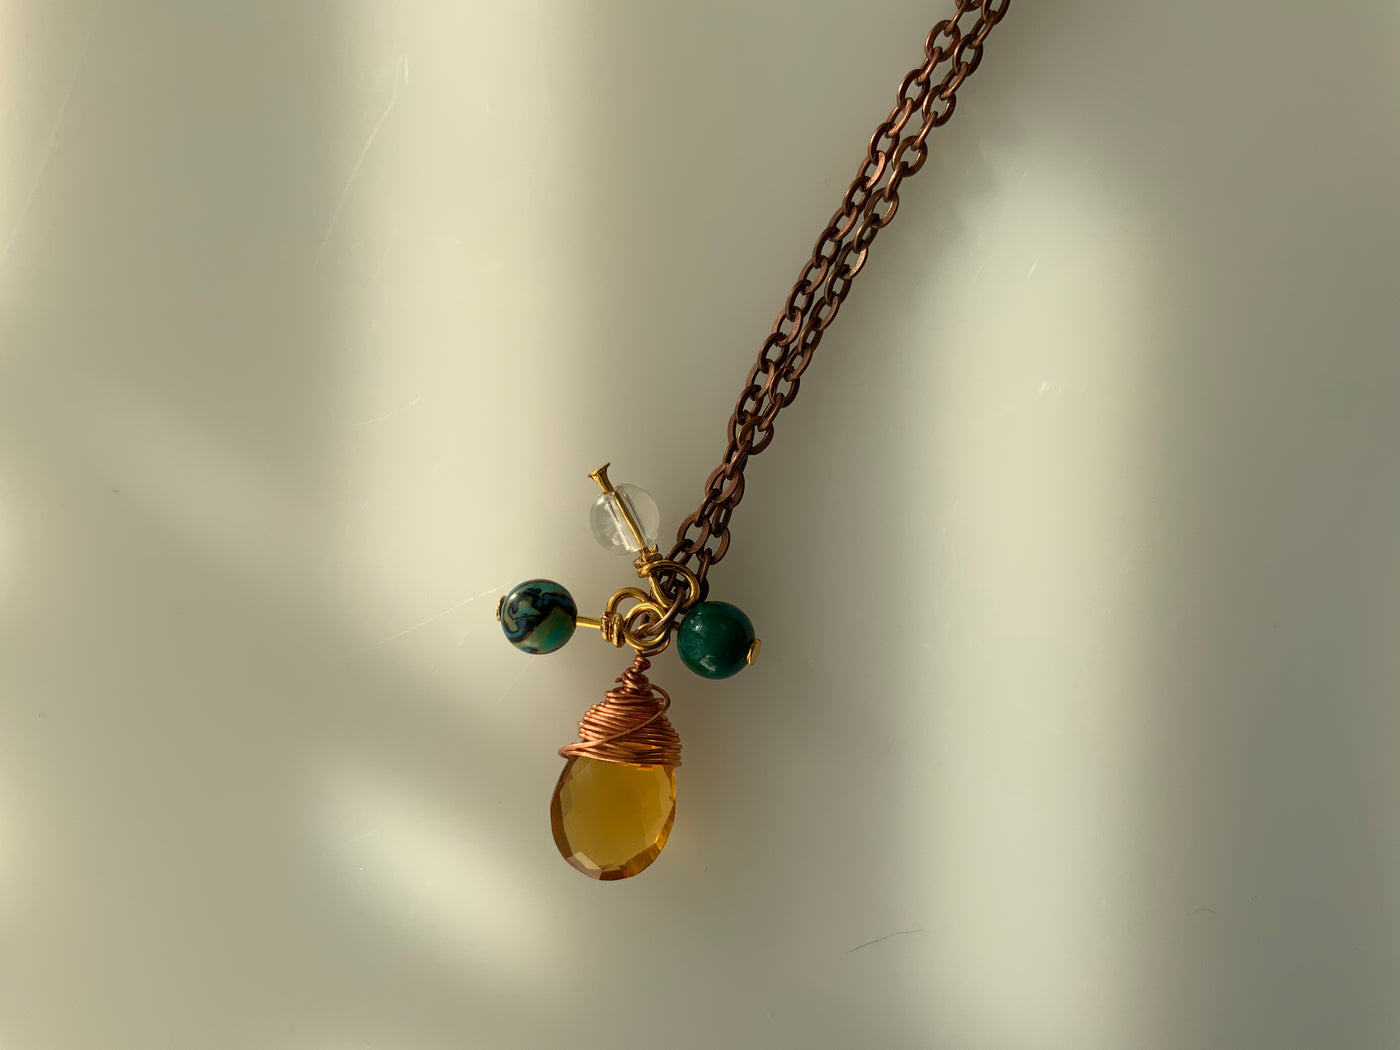 Citrine briolette, quartz, blue and green malachite, wire and chain pendant